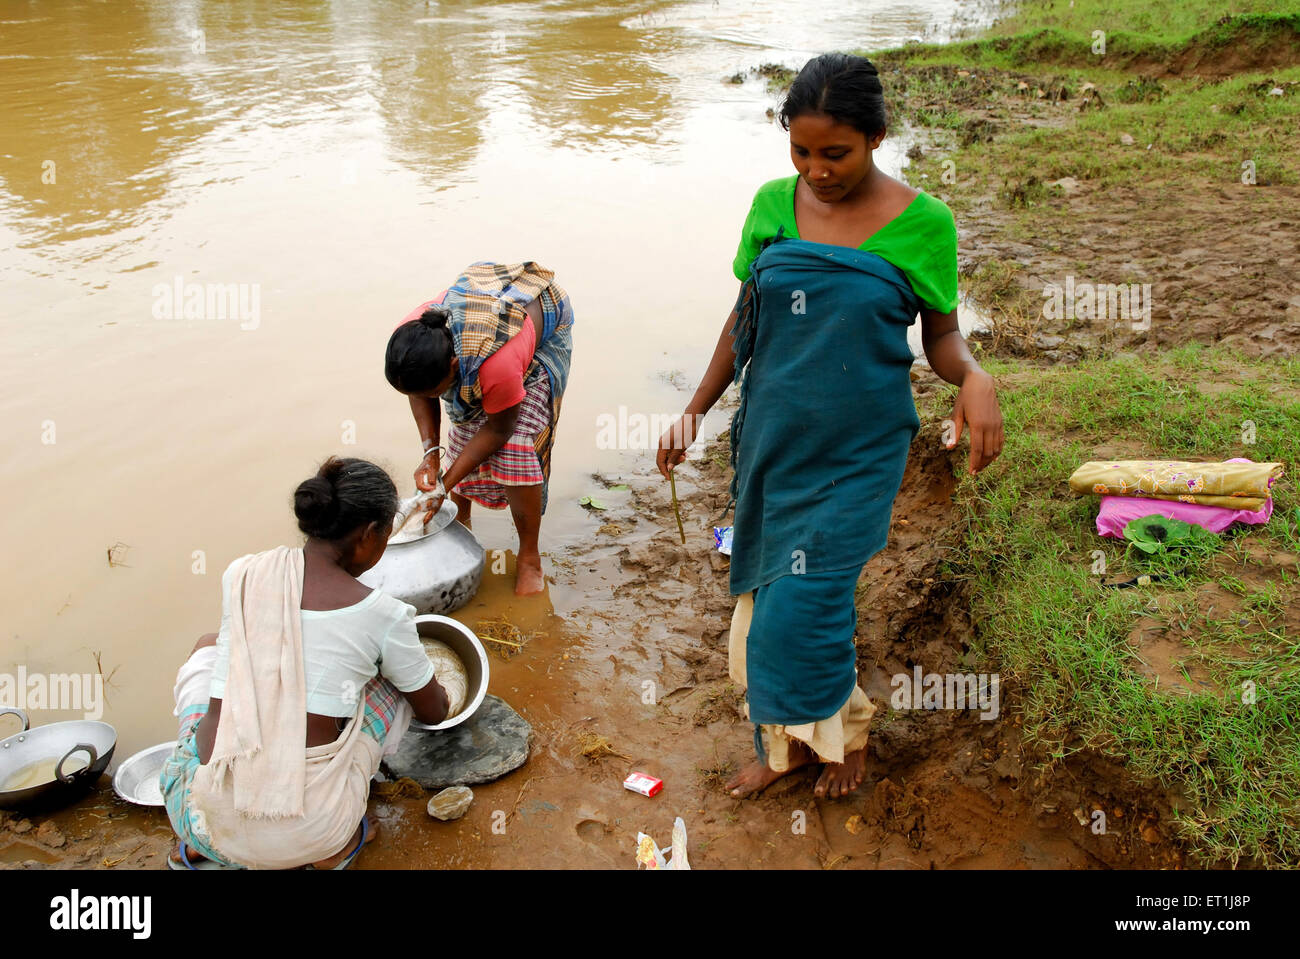 Les femmes lavant des pots dans la rivière, la tribu Ho, les gens tribaux, Chakradharpur, Singhbhum Ouest, Jharkhet, Inde, Asie Banque D'Images